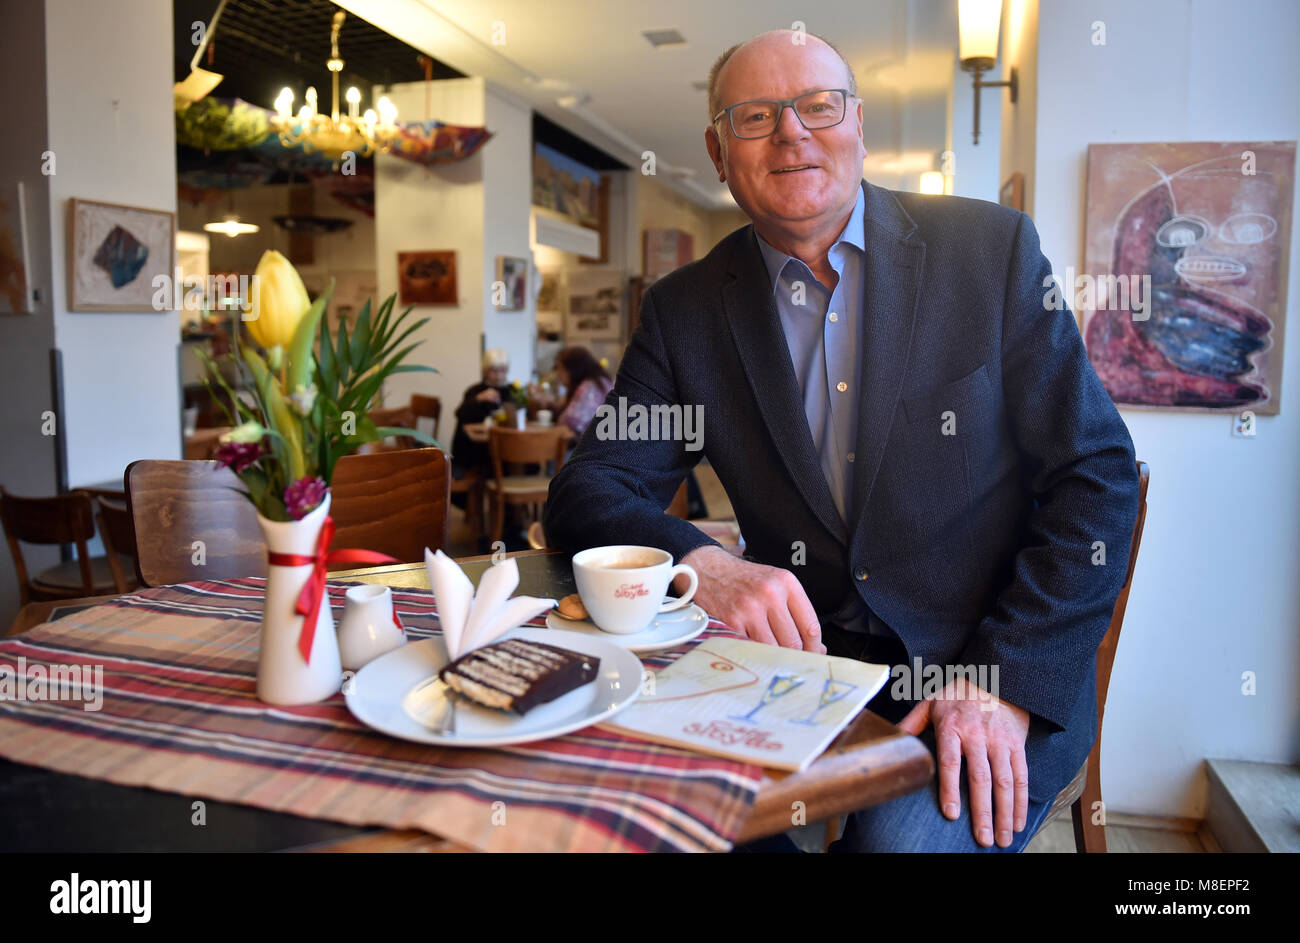 13 mars 2018, Allemagne, Berlin : Uwe Radack, gestionnaire, se tient à une table dans son Cafe Sibylle. Le café a été fondé en 1953 et est situé dans un bâtiment classé sur la Karl-Marx-Allee, qui était appelé Stalinallee jusqu'en 1961 dans le quartier berlinois de Berlin-Friedrichshain. Photo : Britta Pedersen/dpa-Zentralbild/ZB Banque D'Images